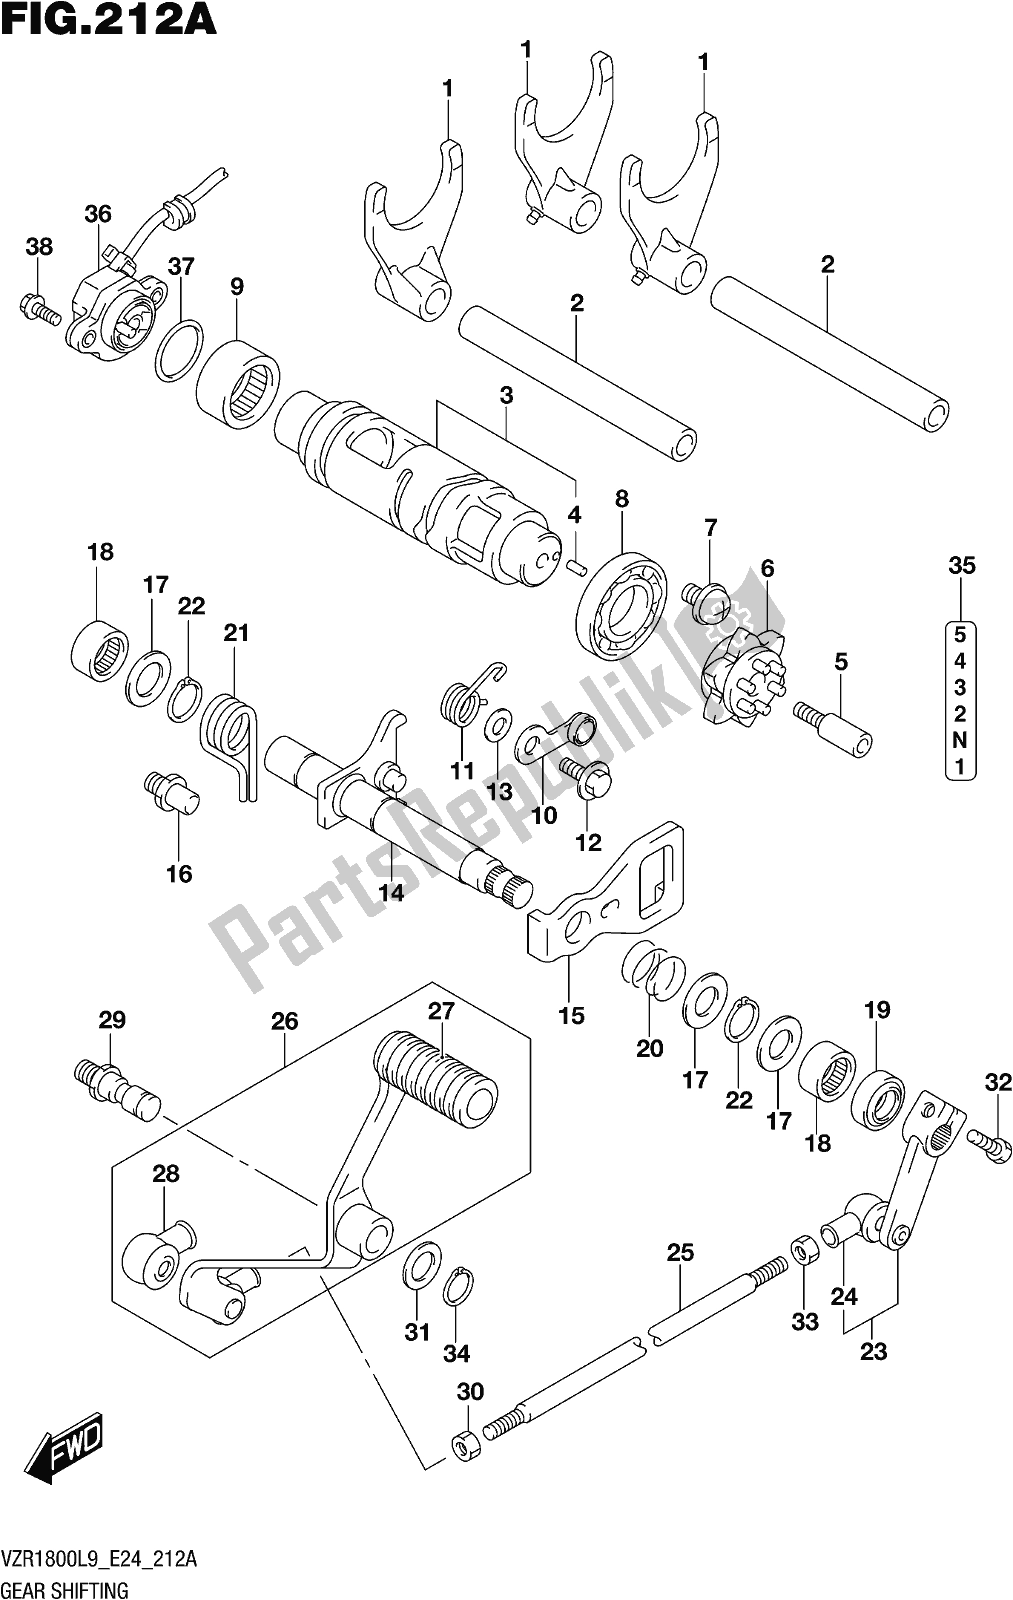 Toutes les pièces pour le Fig. 212a Gear Shifting du Suzuki VZR 1800 BZ 2019